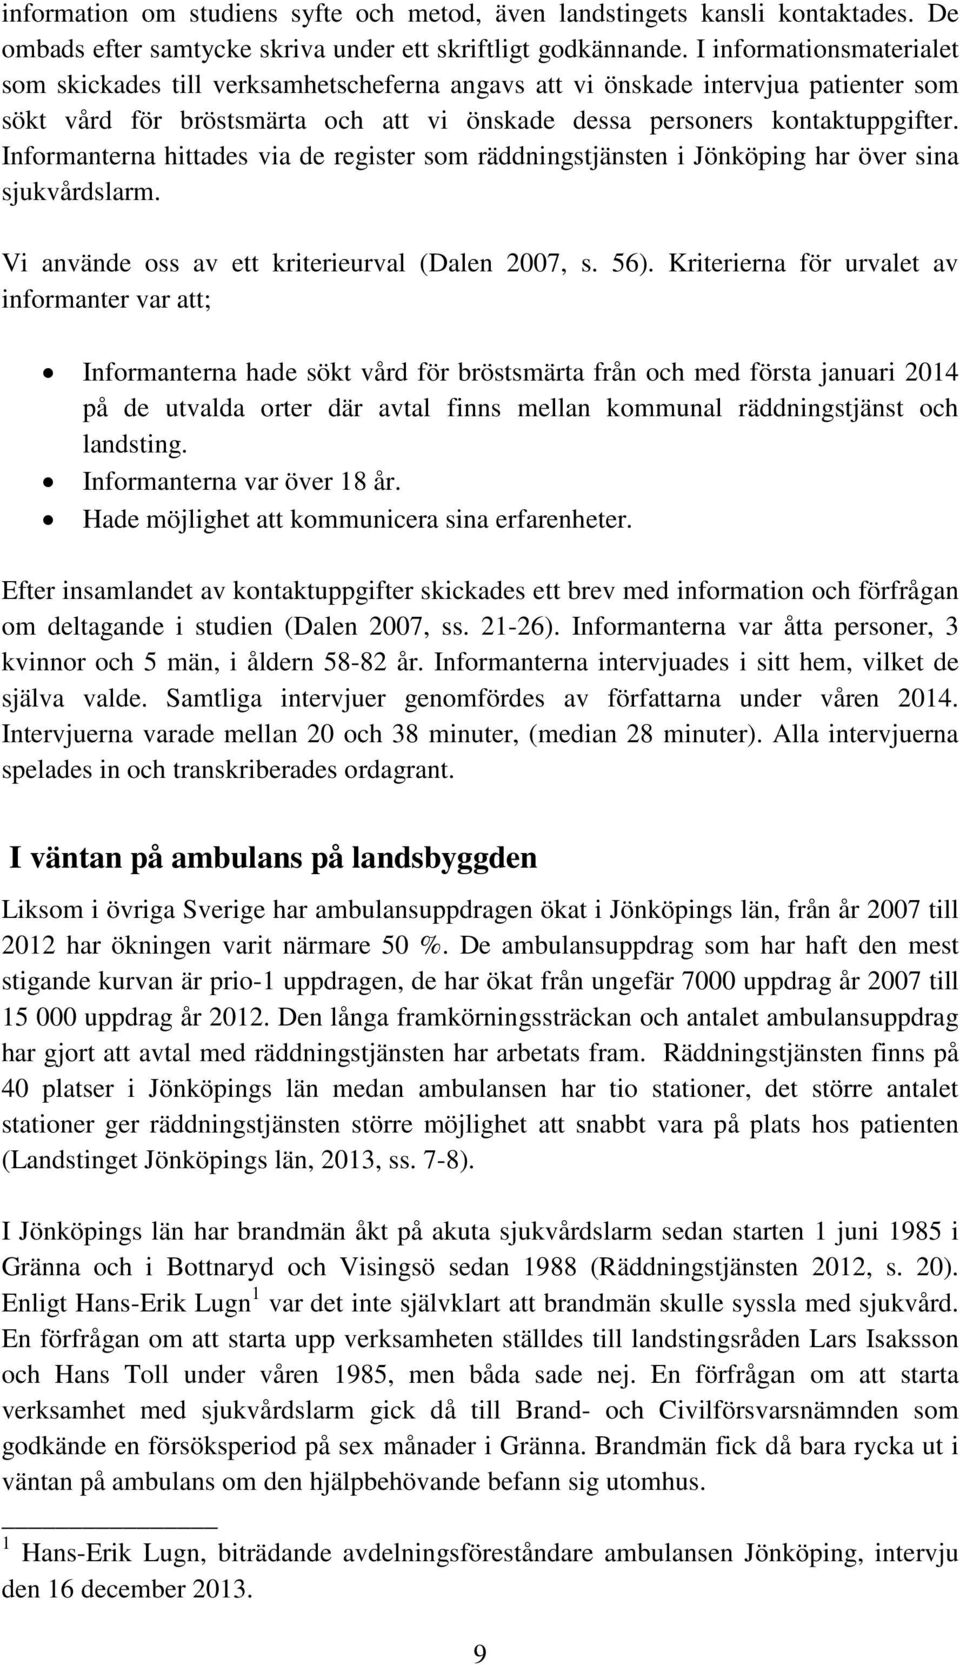 Informanterna hittades via de register som räddningstjänsten i Jönköping har över sina sjukvårdslarm. Vi använde oss av ett kriterieurval (Dalen 2007, s. 56).